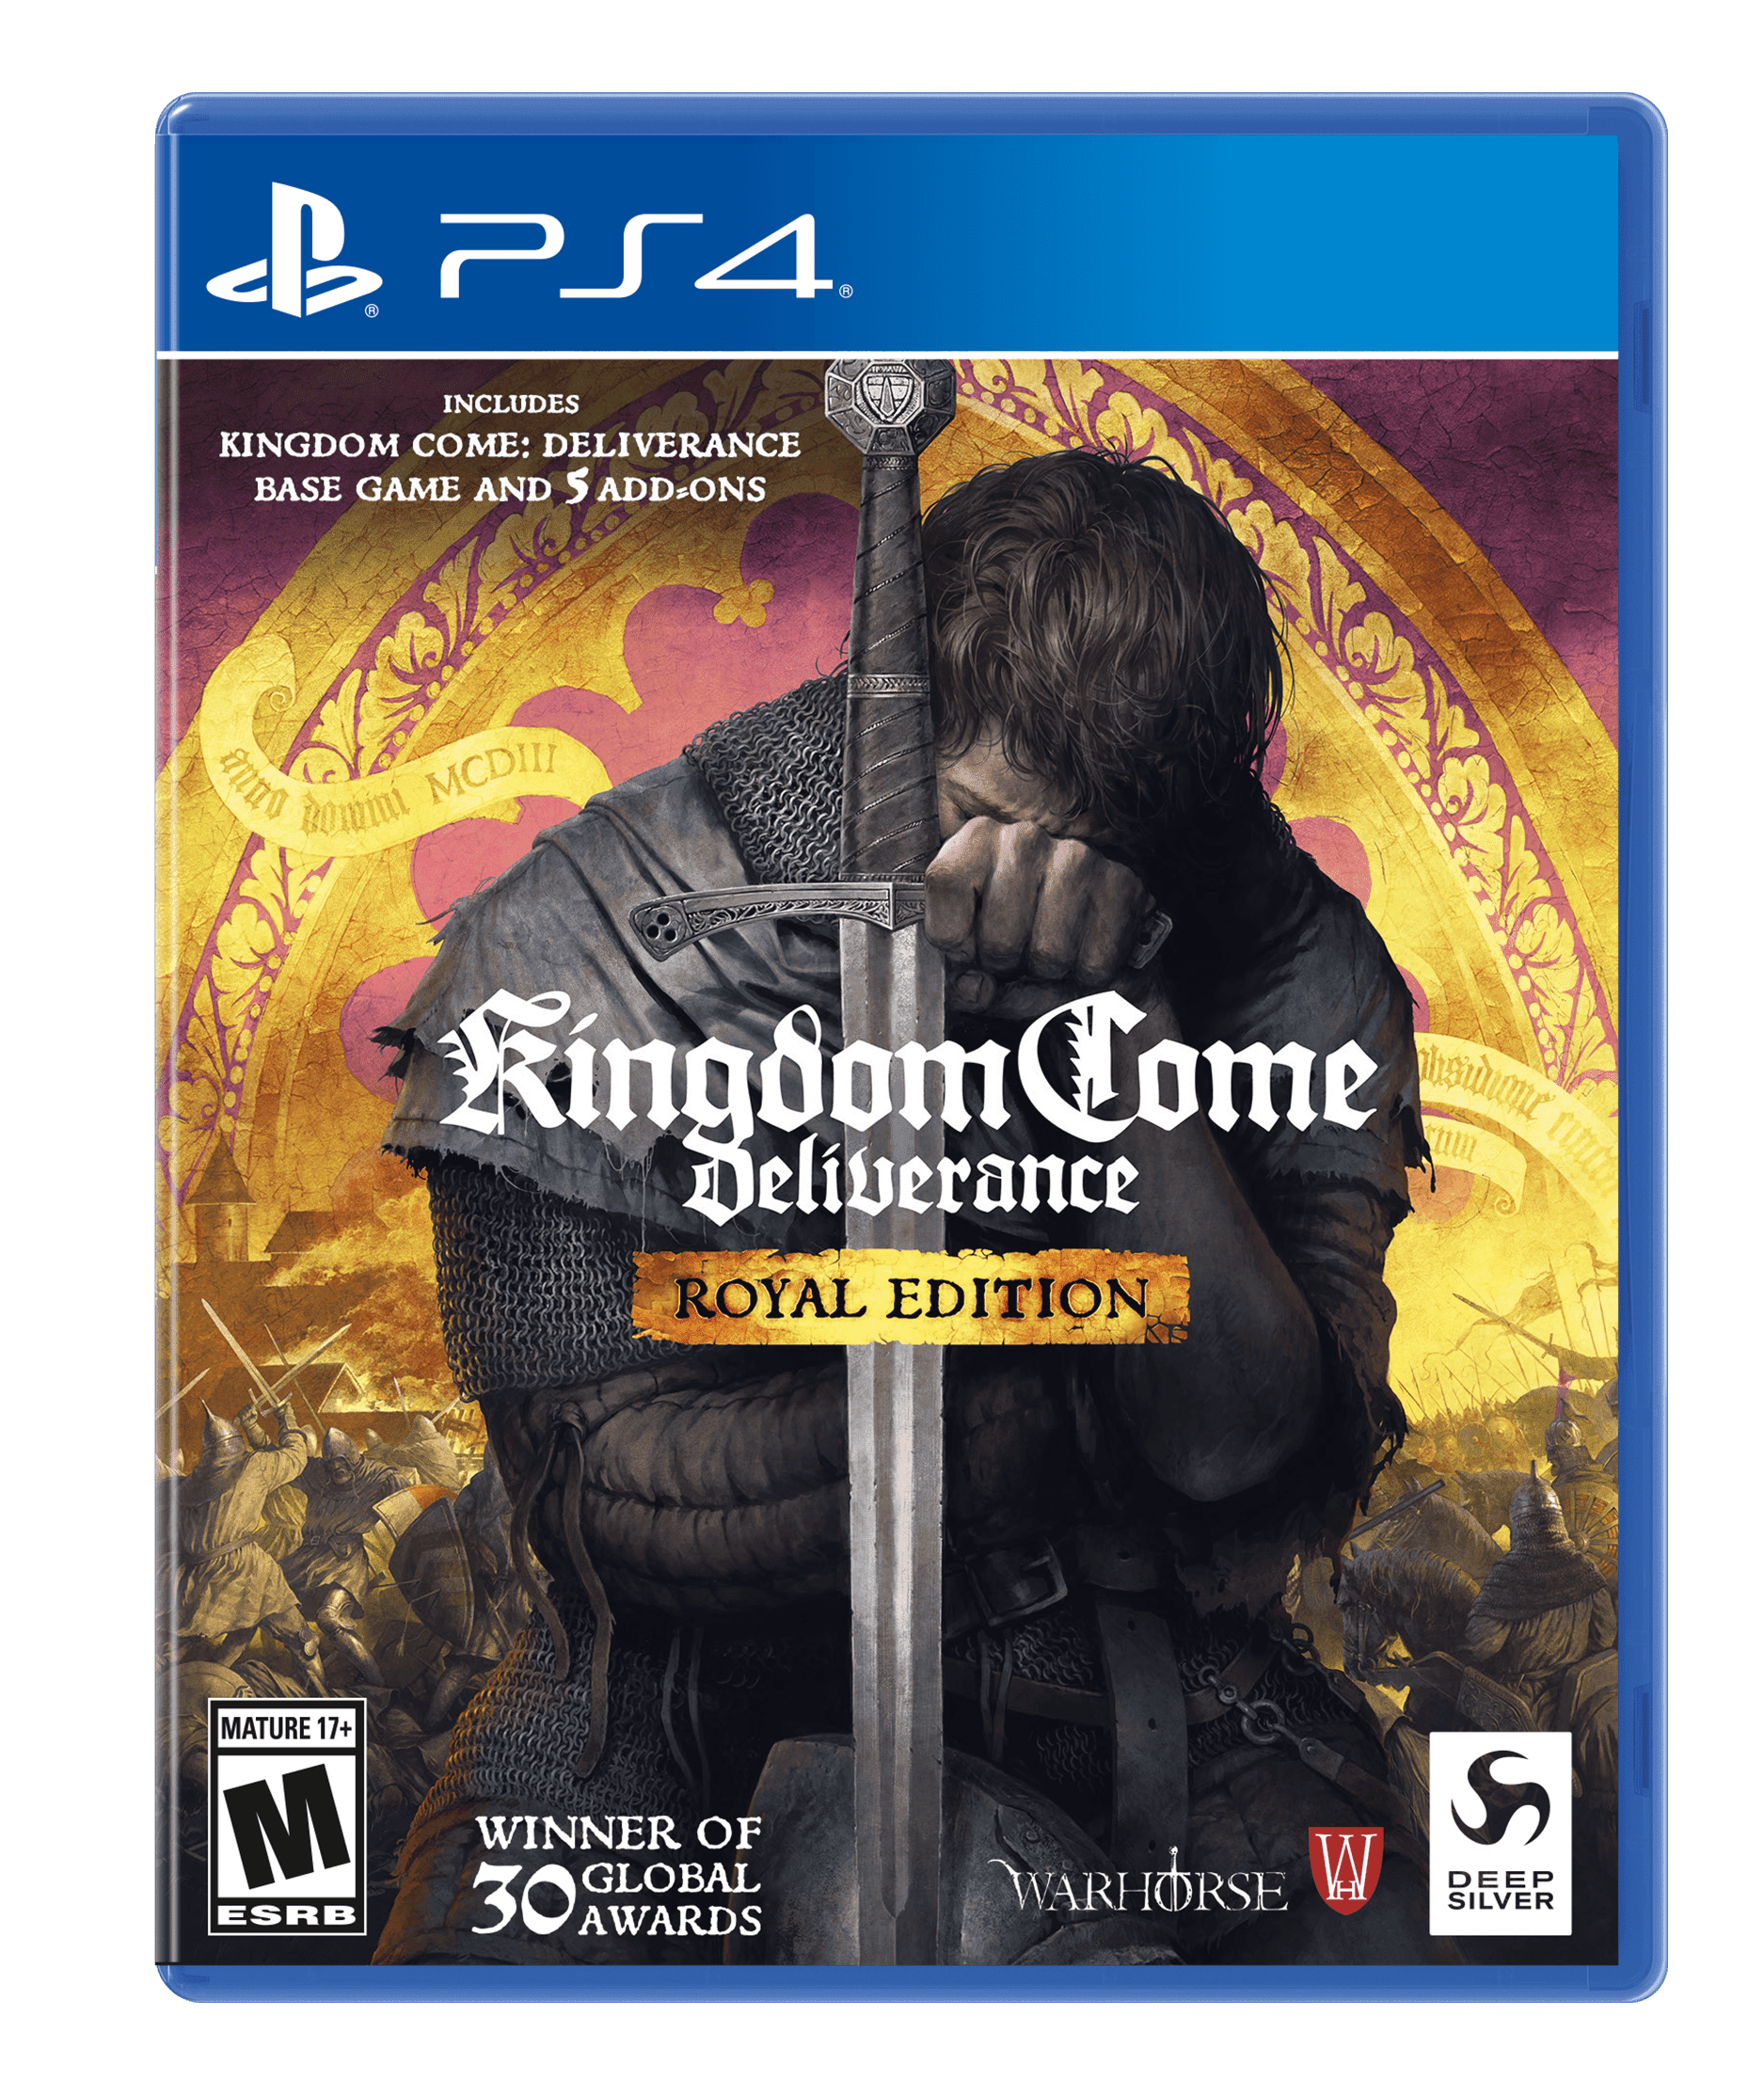 Egetræ ejendom hoppe Kingdom Come Deliverance: Royal Edition, Deep Silver, PlayStation 4,  816819016152 - Walmart.com